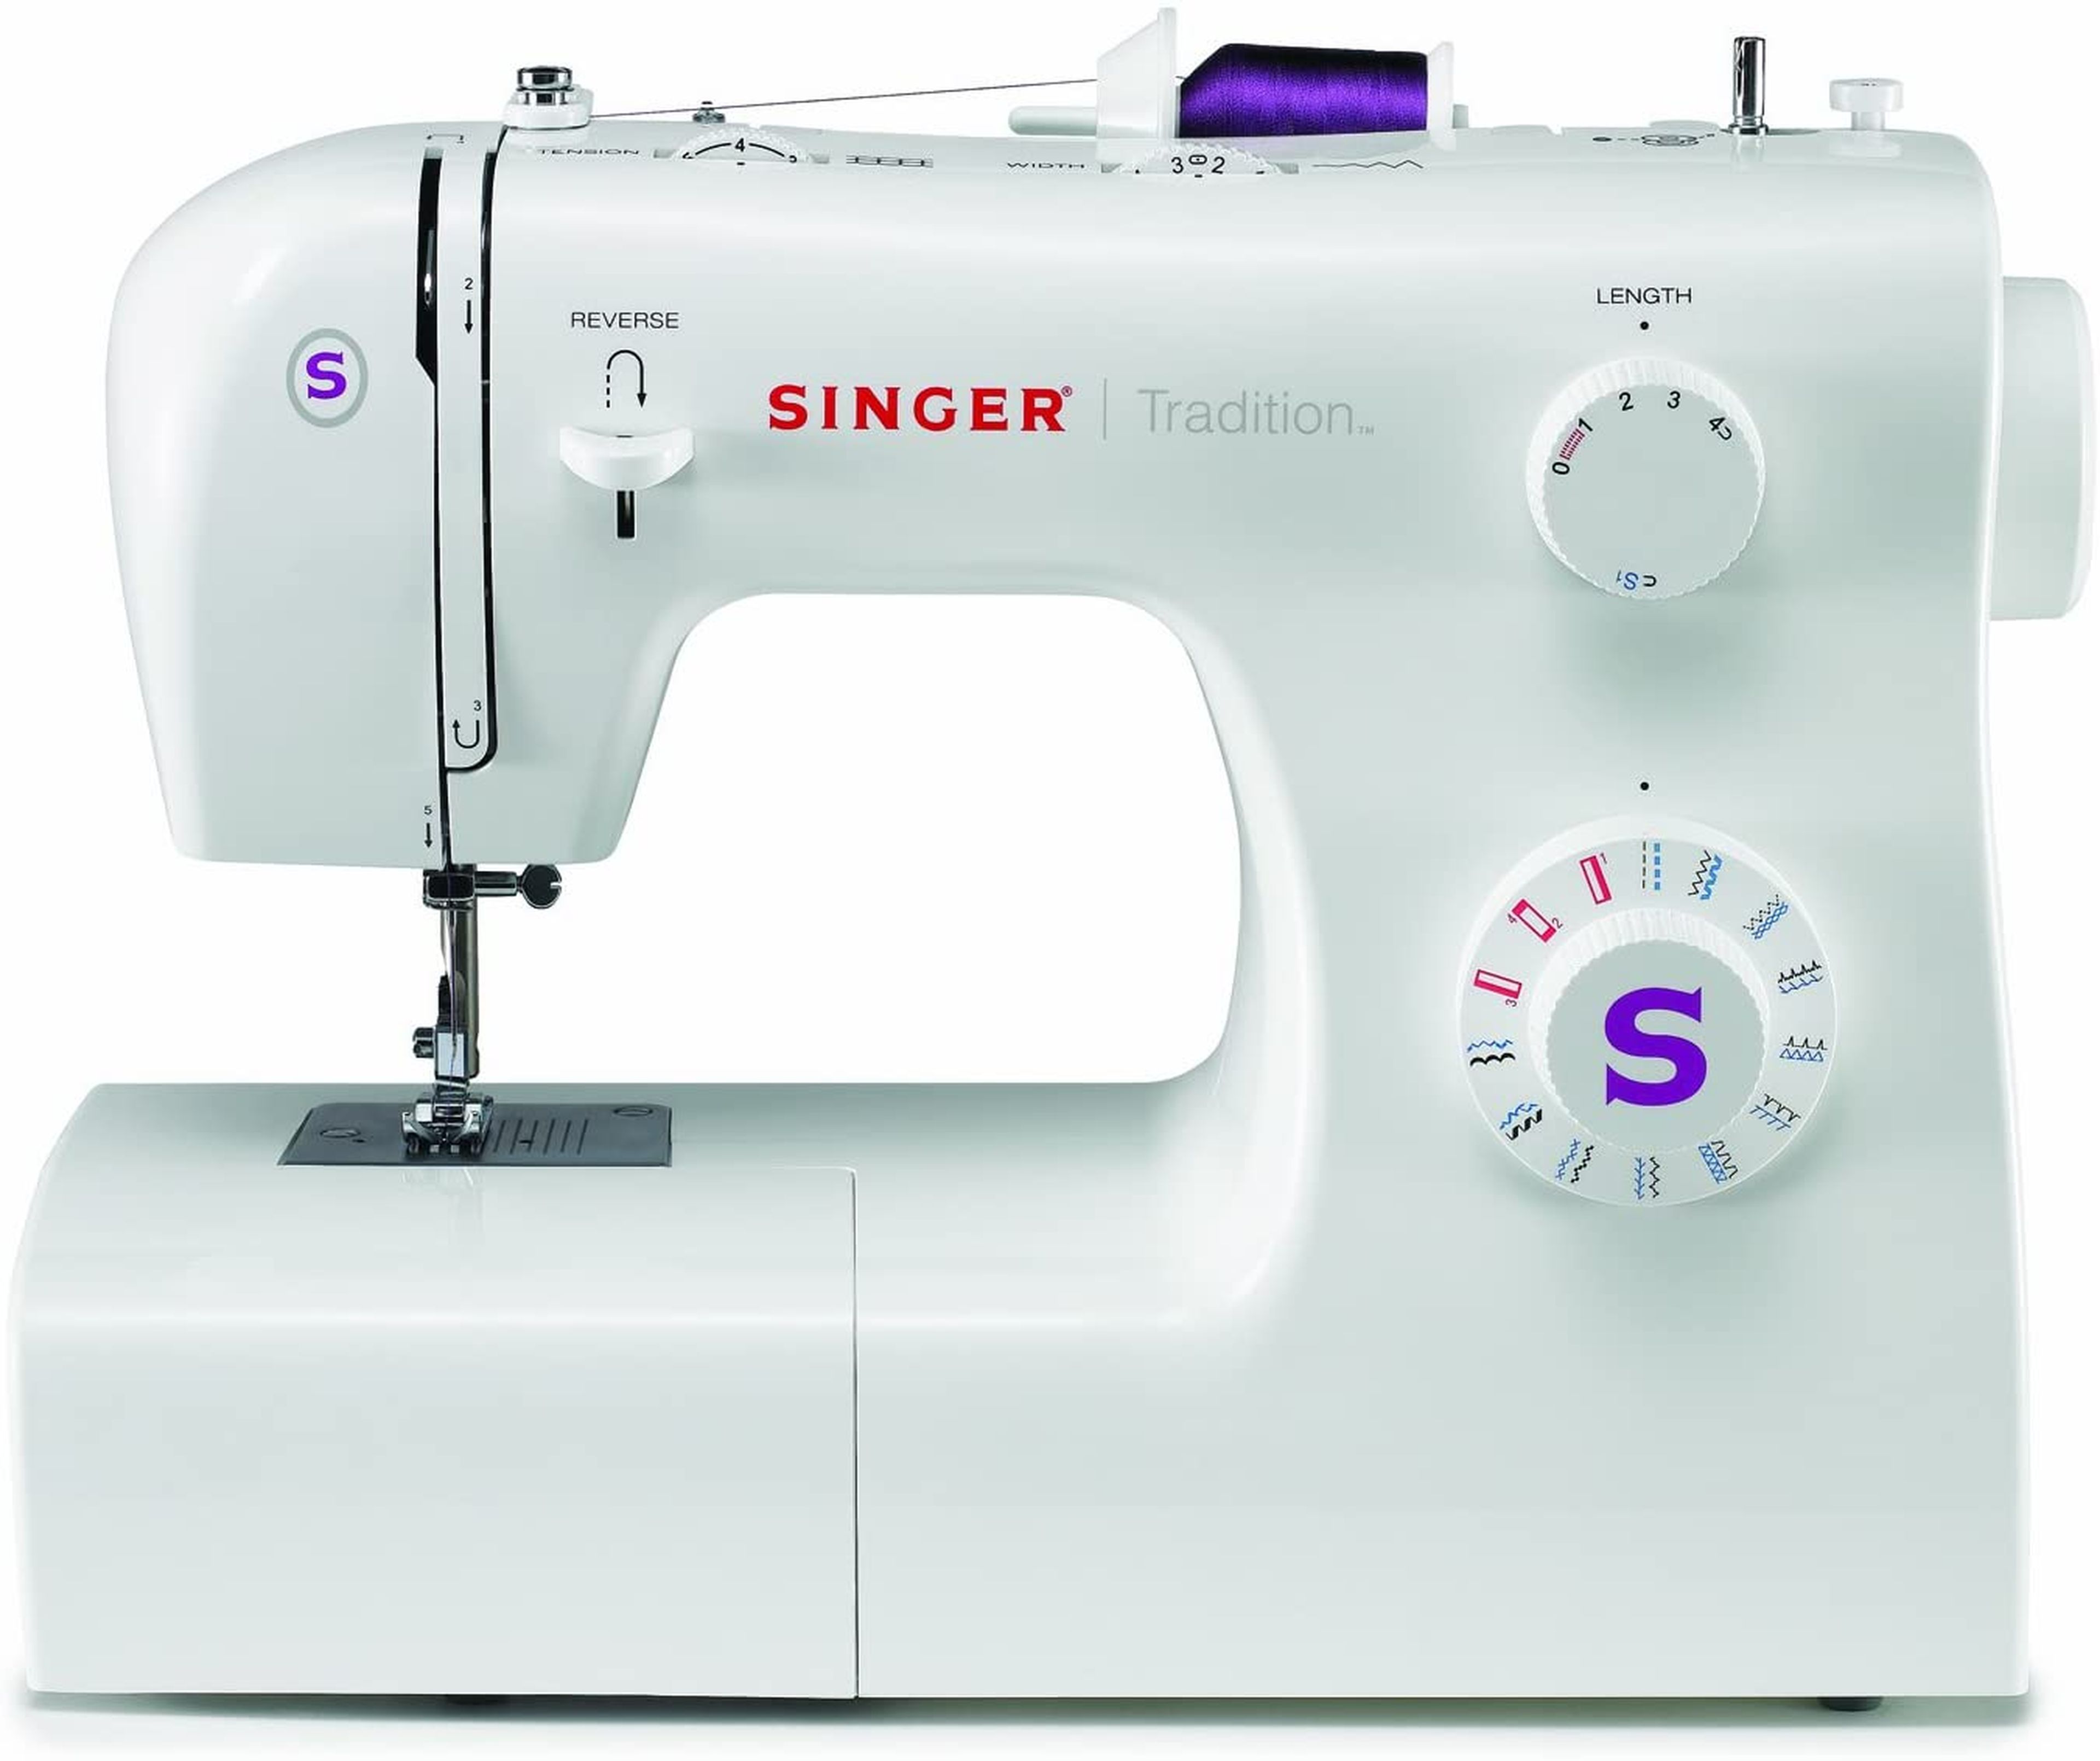 Mejores modelos de máquinas de coser Singer